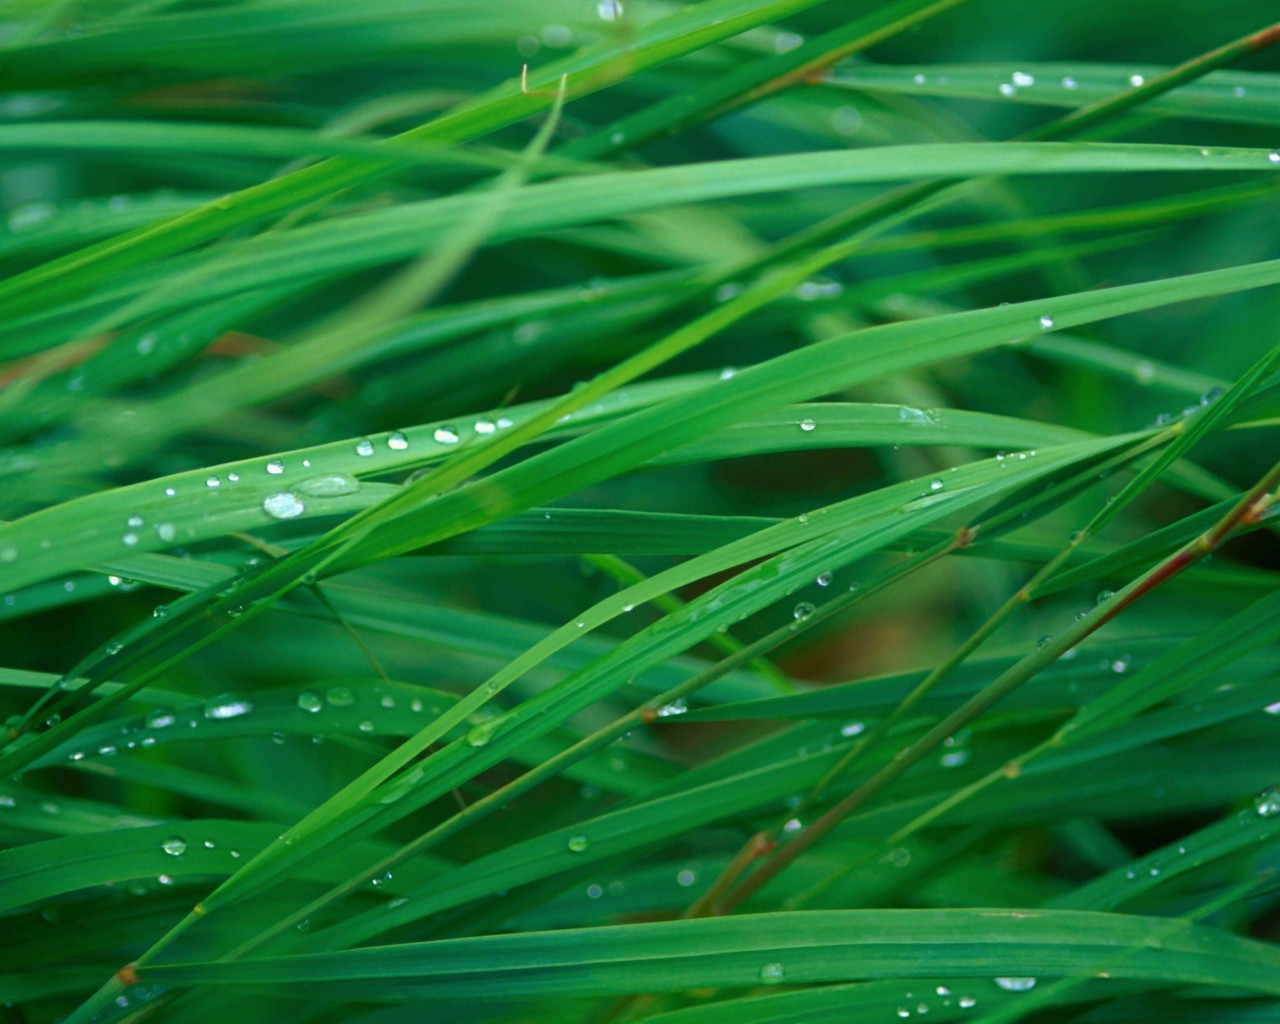 Green Blades Of Grass Wallpaper for Desktop 1280x1024